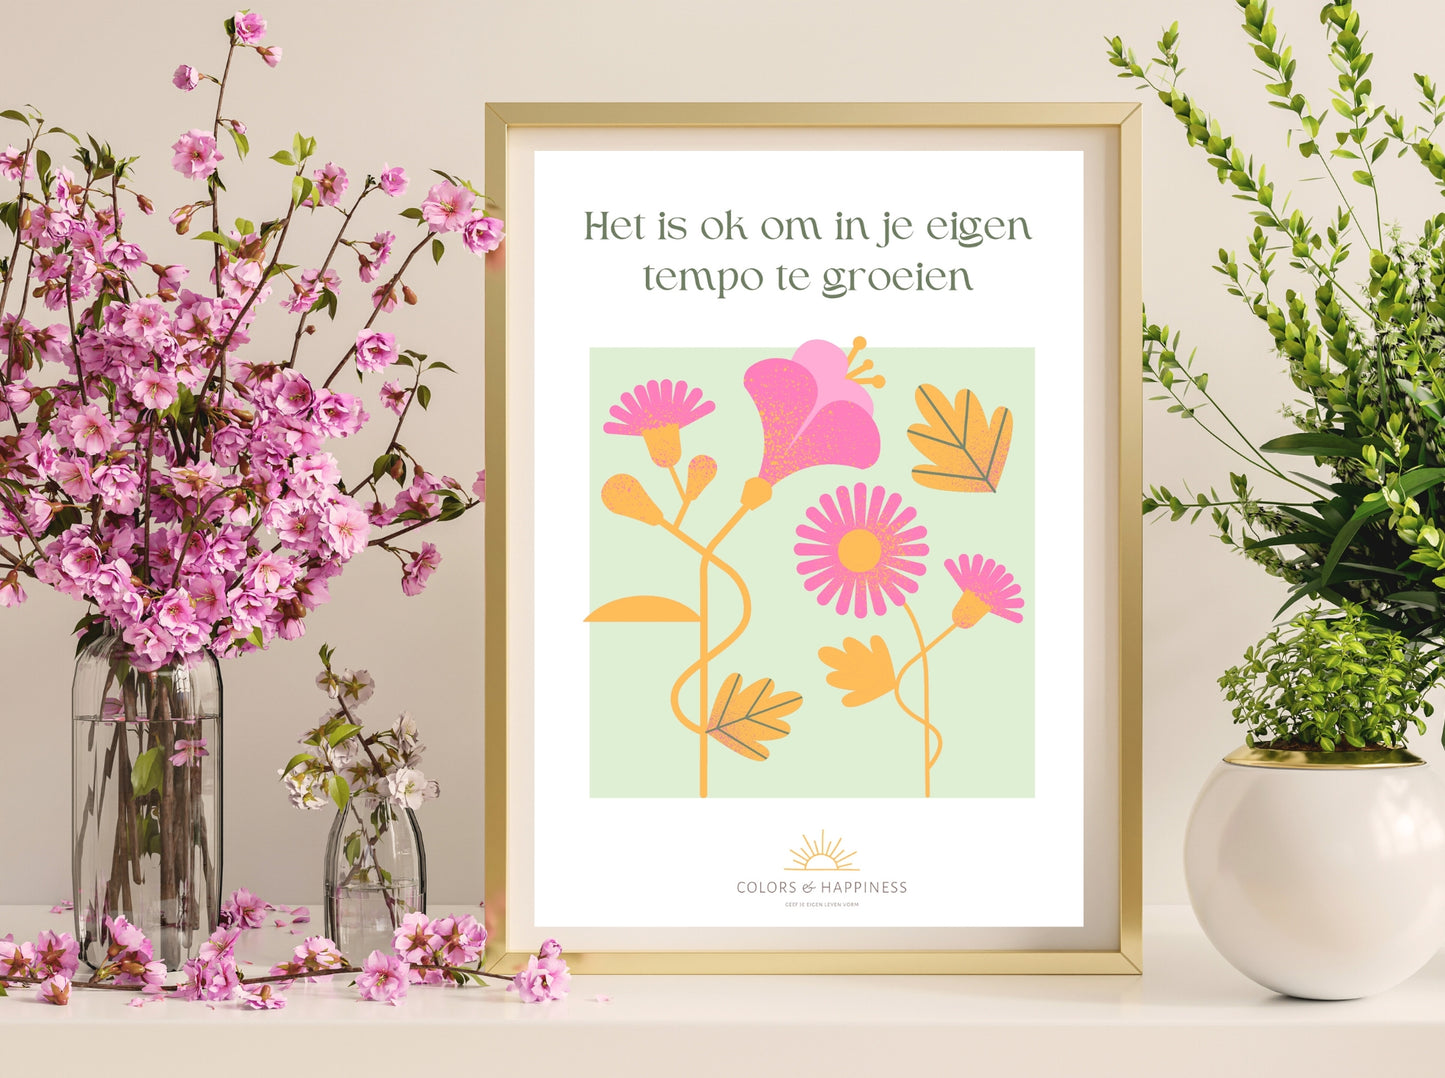 Inspirerende poster met quote "Het is ok..." en bloemen illustratie, digitale download voor een bewuster leven